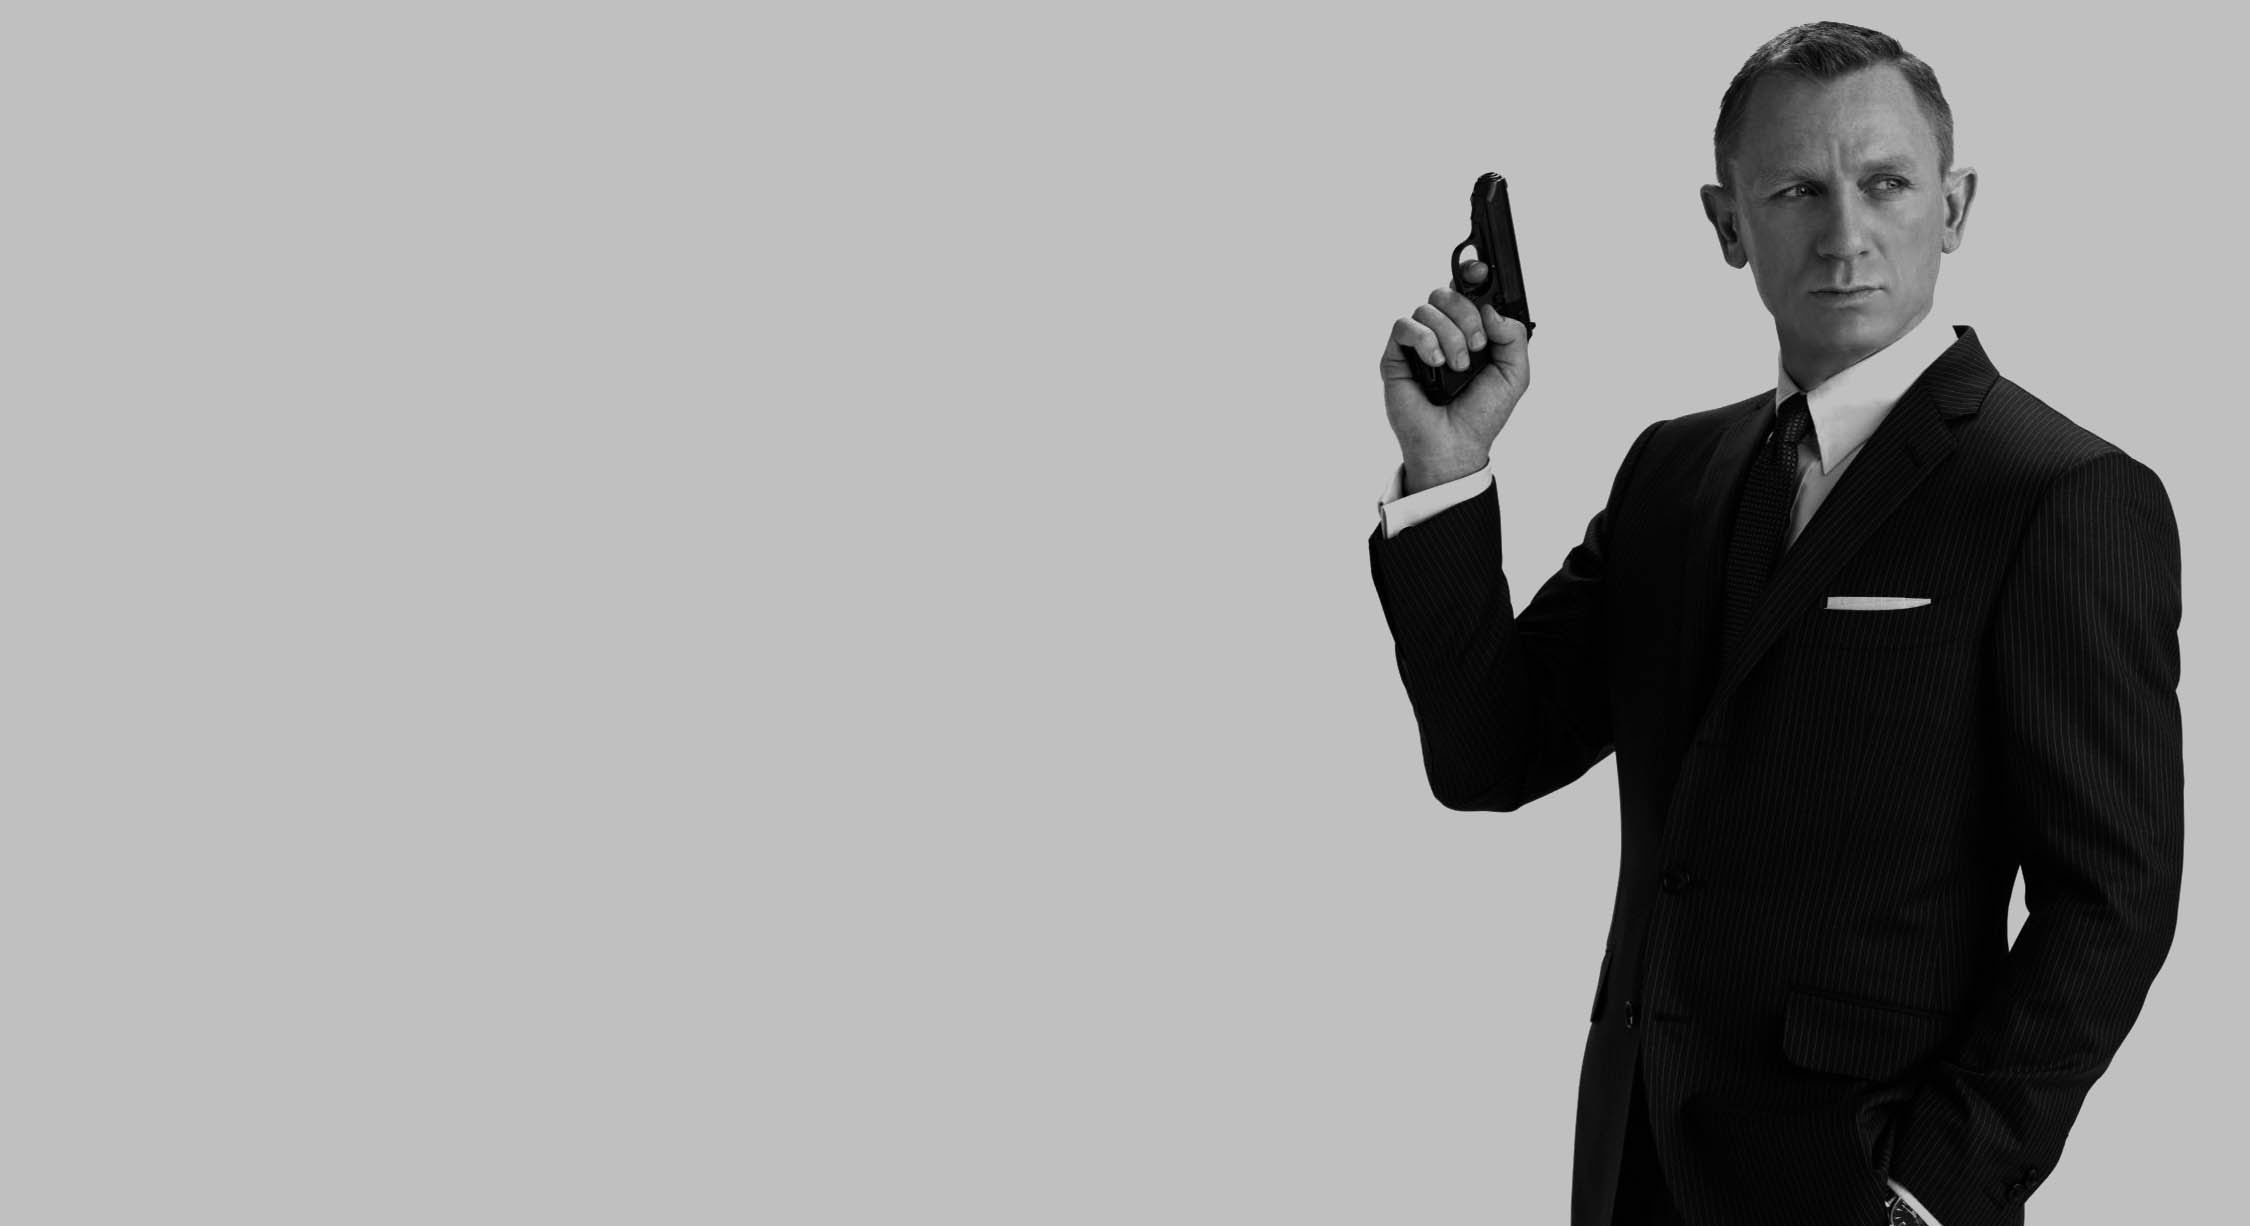  James Bond Karakterinin Yaratıcısı Ian Fleming Kara Haftada Anılacak